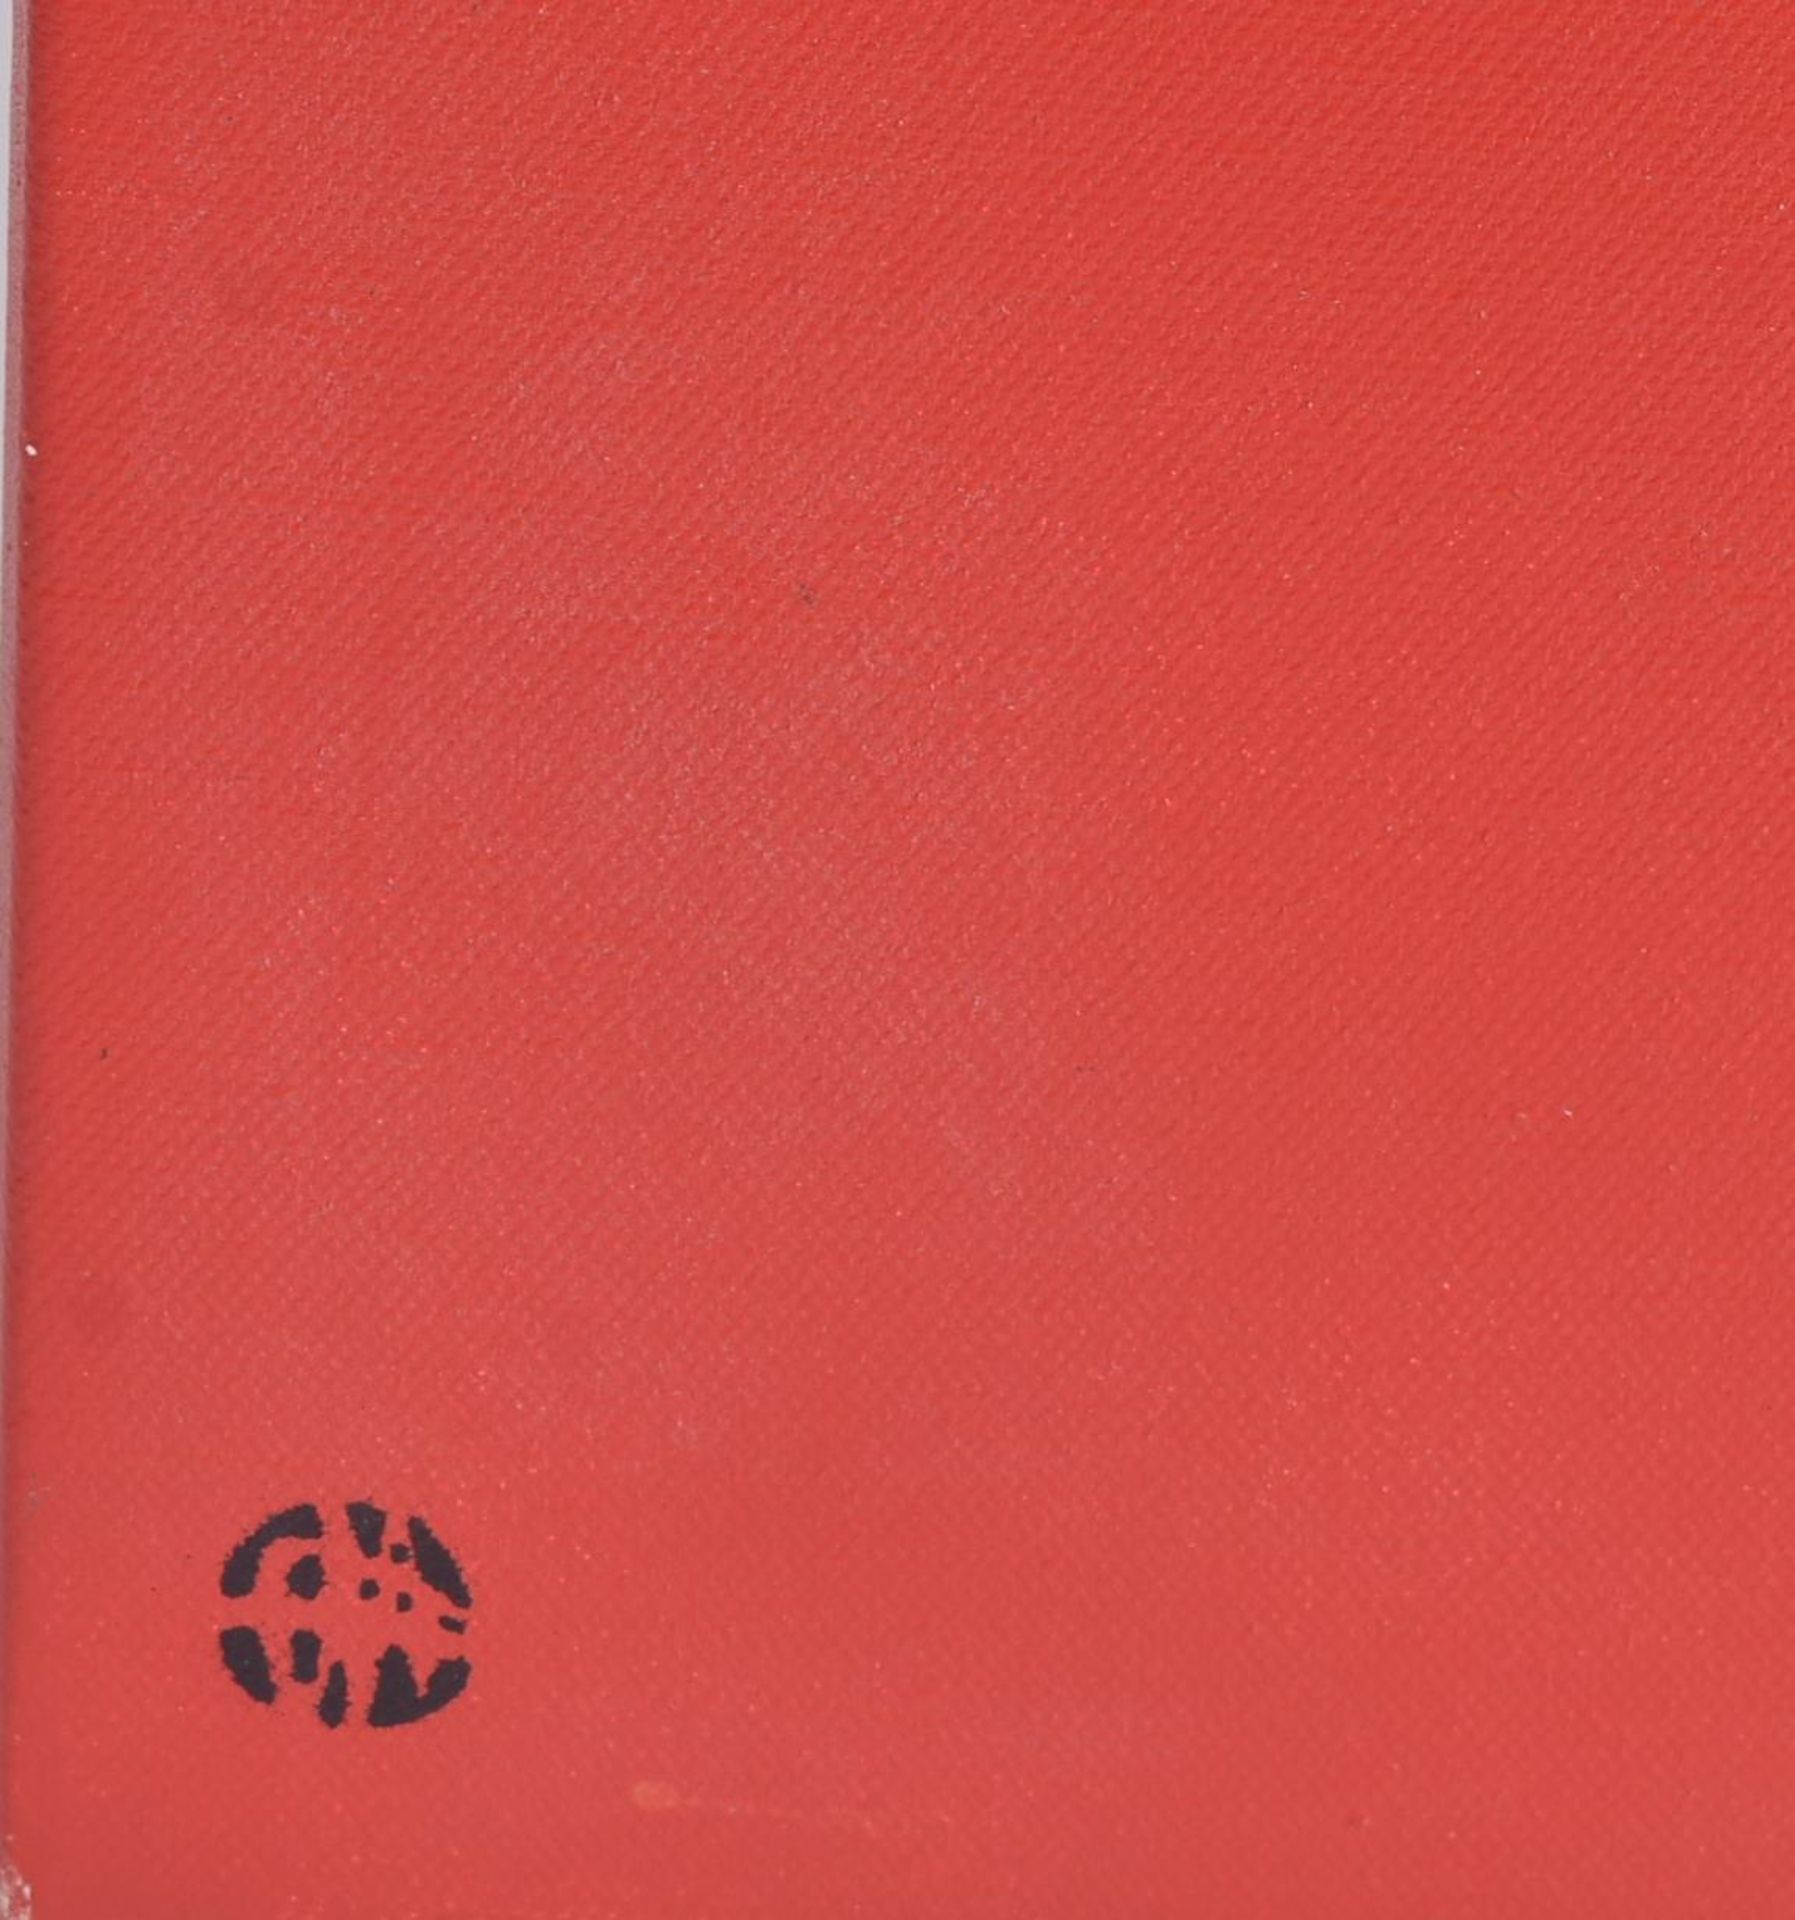 NICK WALKER (B.1969) - 'WHITE PANTIES, NIKERS (RED)' - 2002 - Image 4 of 5